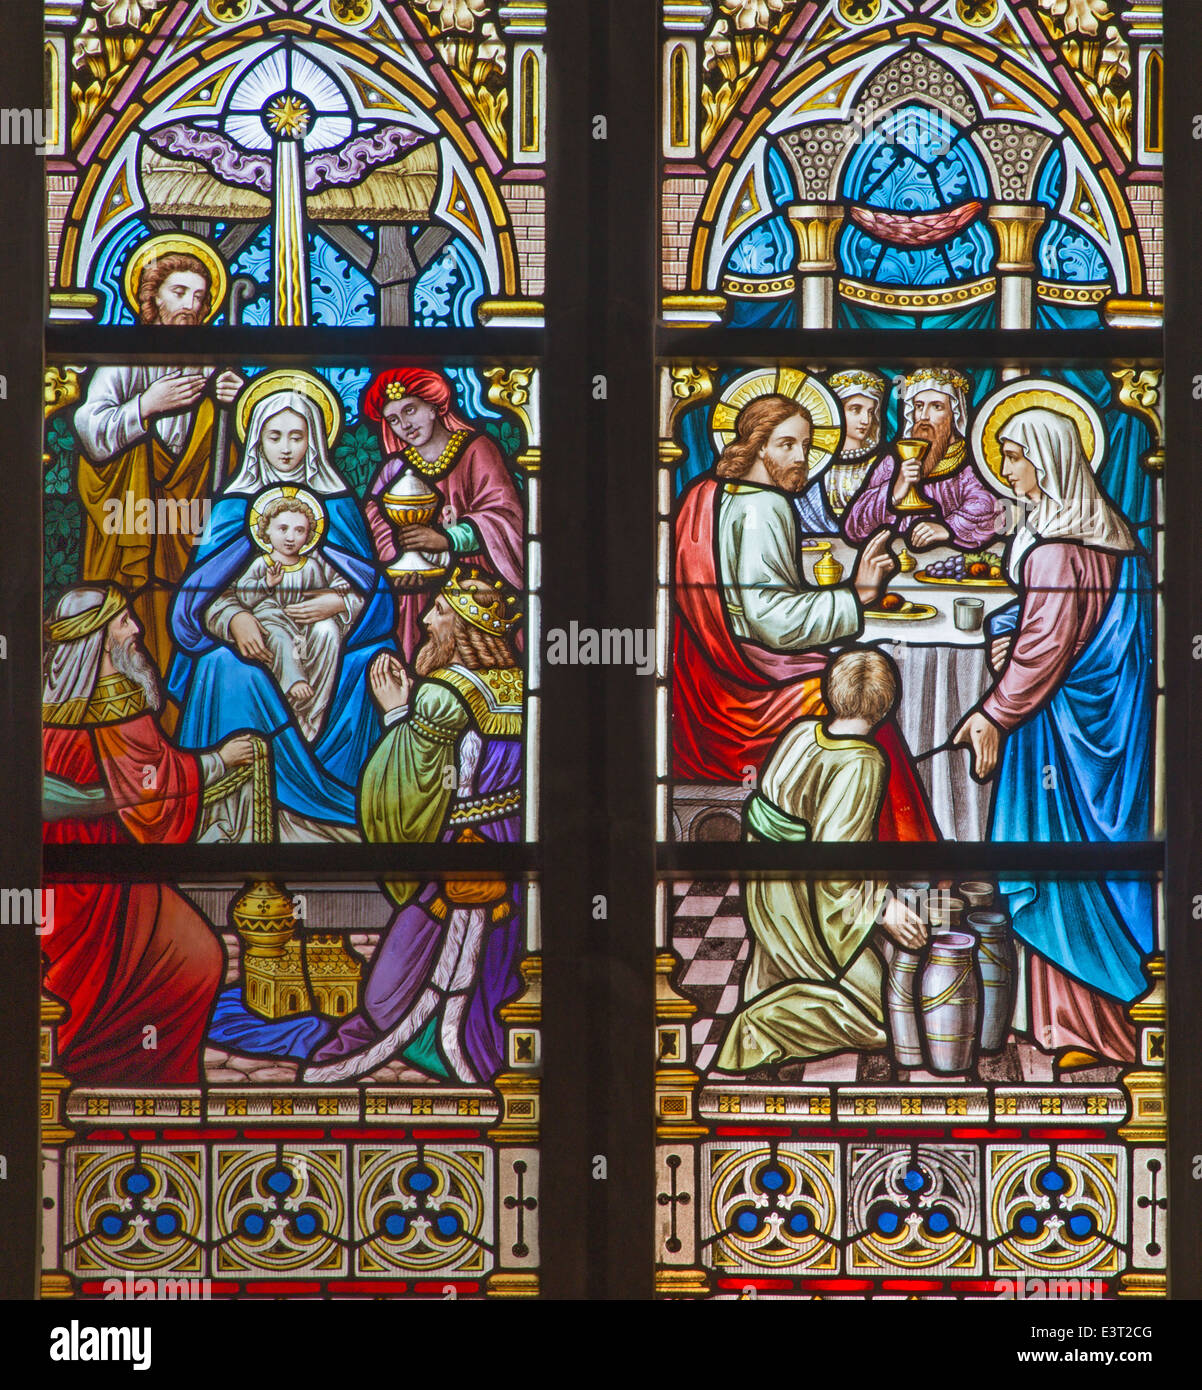 Brügge - die Anbetung der Heiligen drei Könige und der Hochzeit zu Cana Szene auf der Windwopane in st. Jacobs Kirche (Jakobskerk). Stockfoto